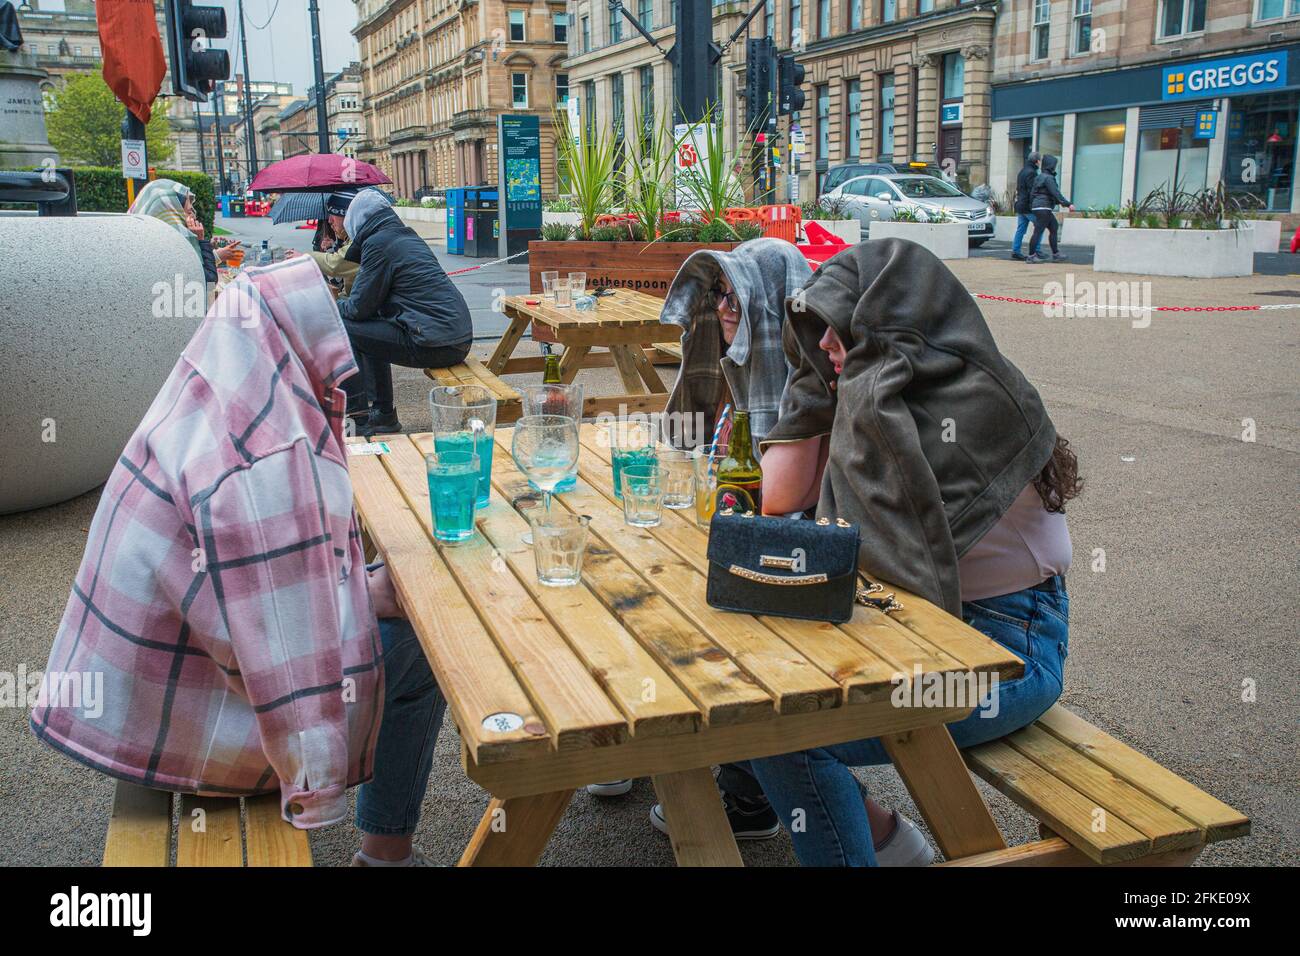 Gruppe junger Menschen, die im Stadtzentrum von Glasgow, Schottland, trinken. Stockfoto